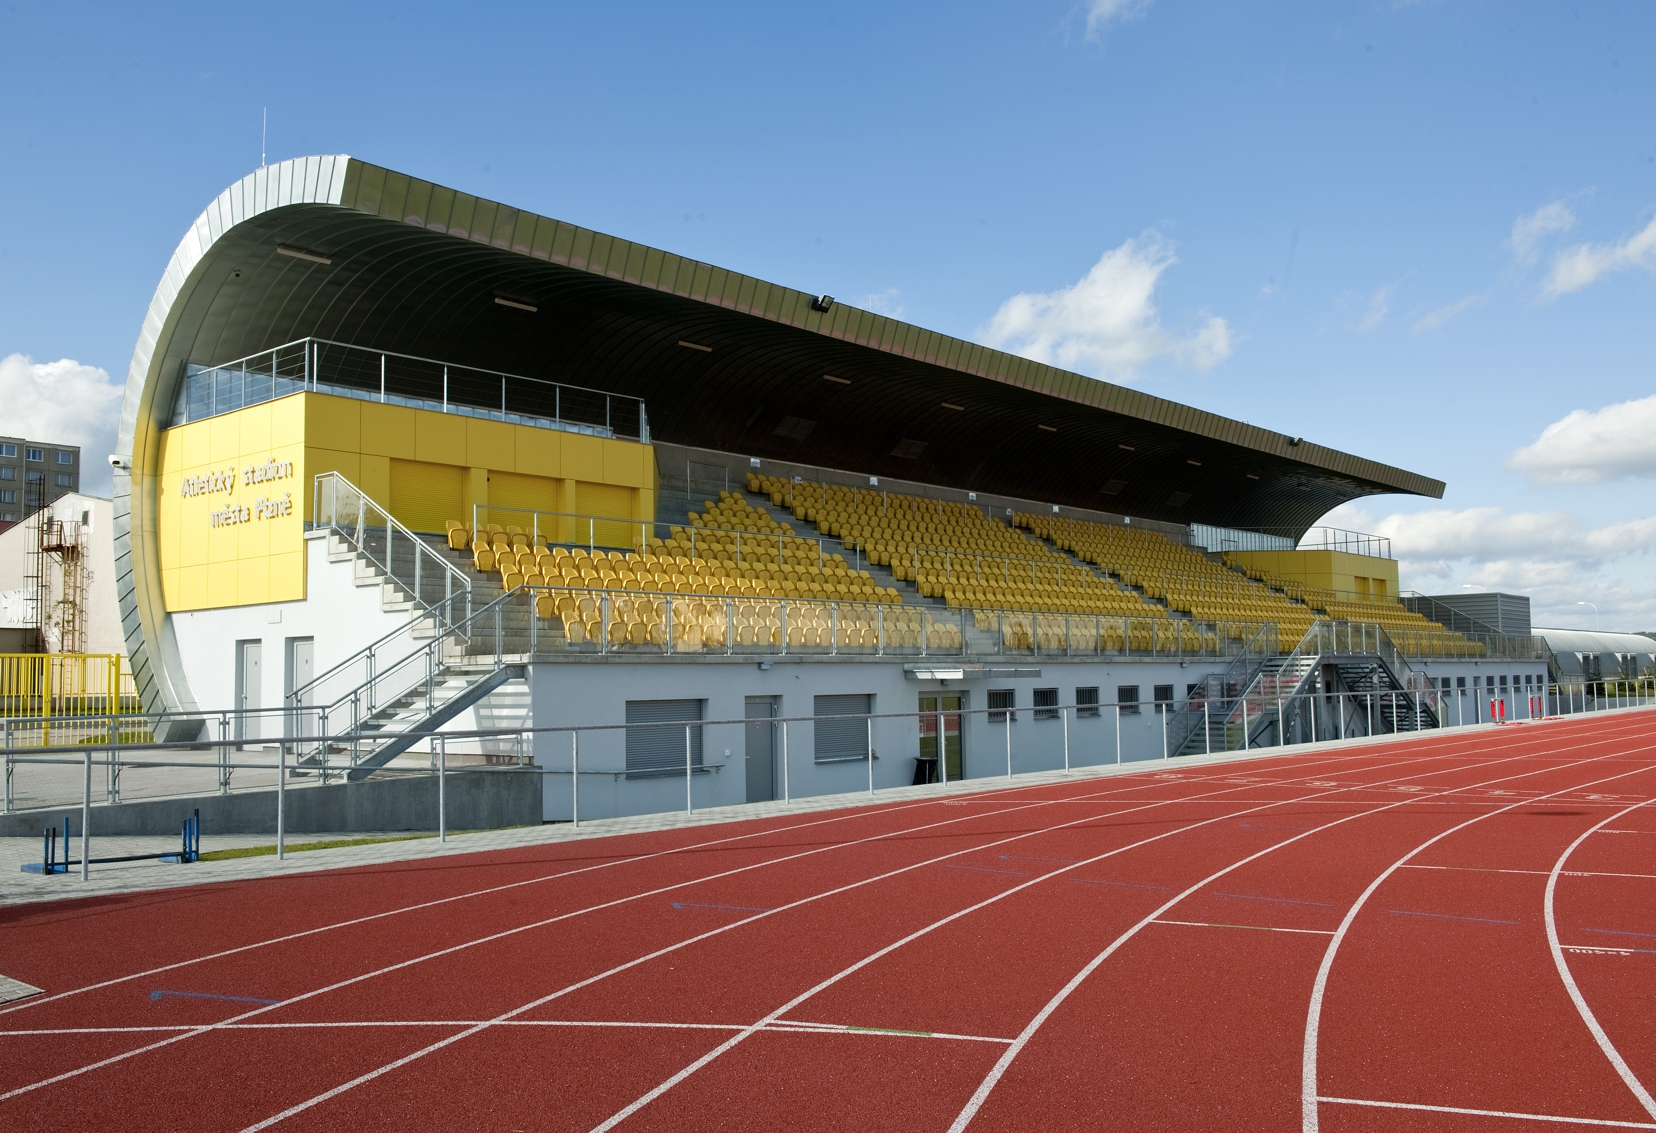 Atletický stadion Štruncovy sady - Construcții industriale